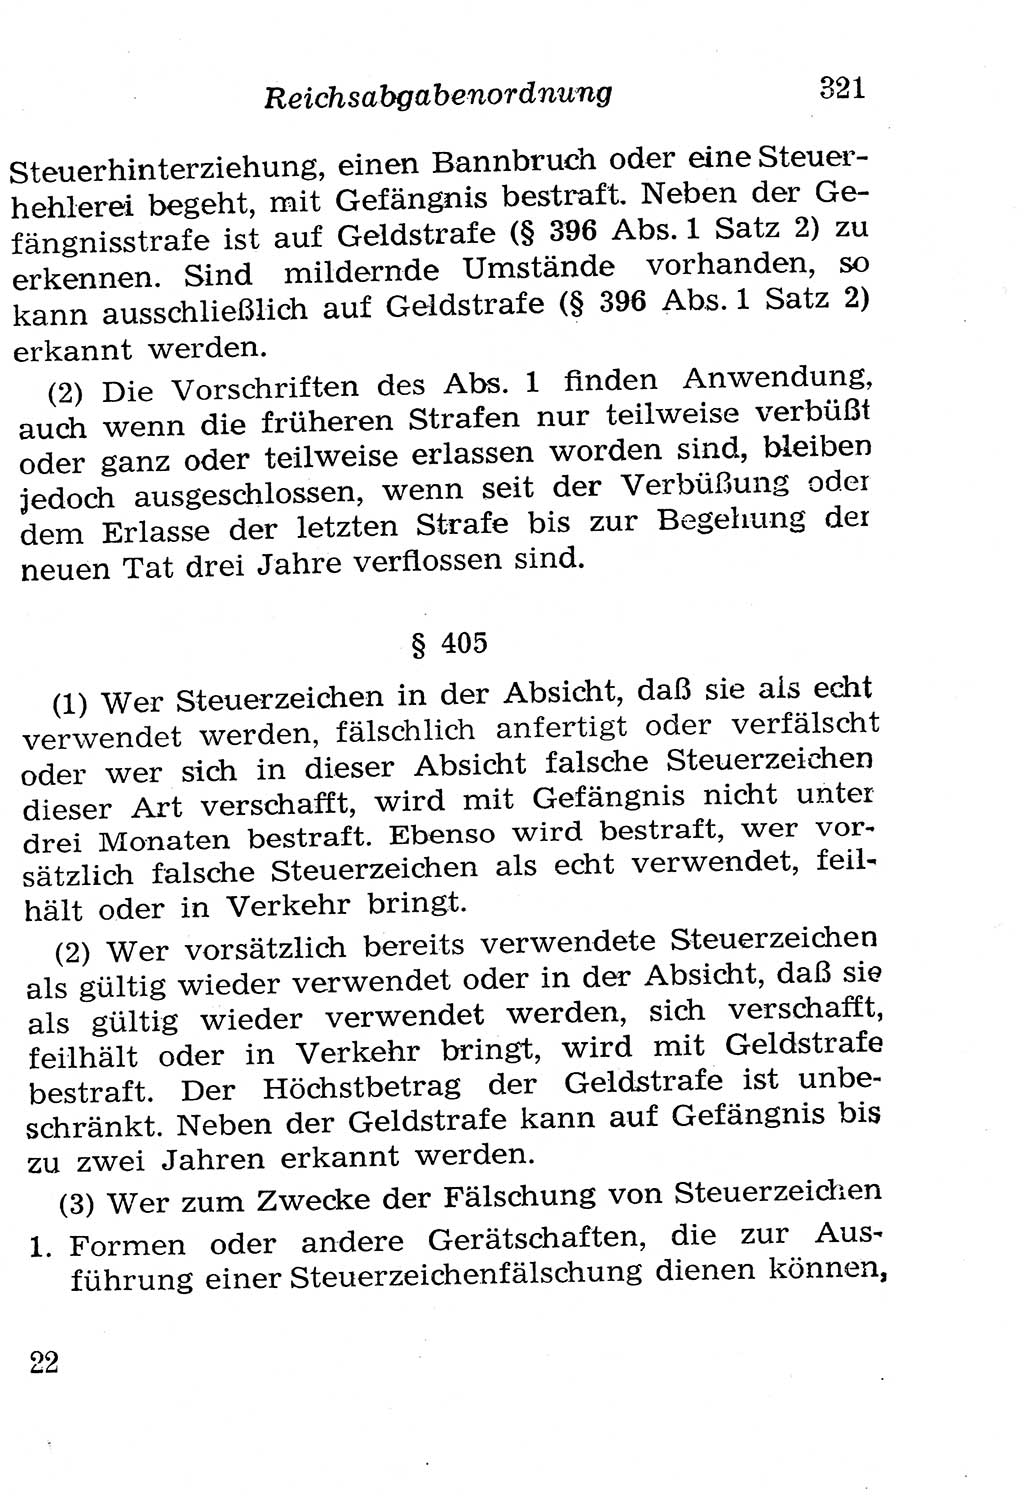 Strafgesetzbuch (StGB) und andere Strafgesetze [Deutsche Demokratische Republik (DDR)] 1958, Seite 321 (StGB Strafges. DDR 1958, S. 321)